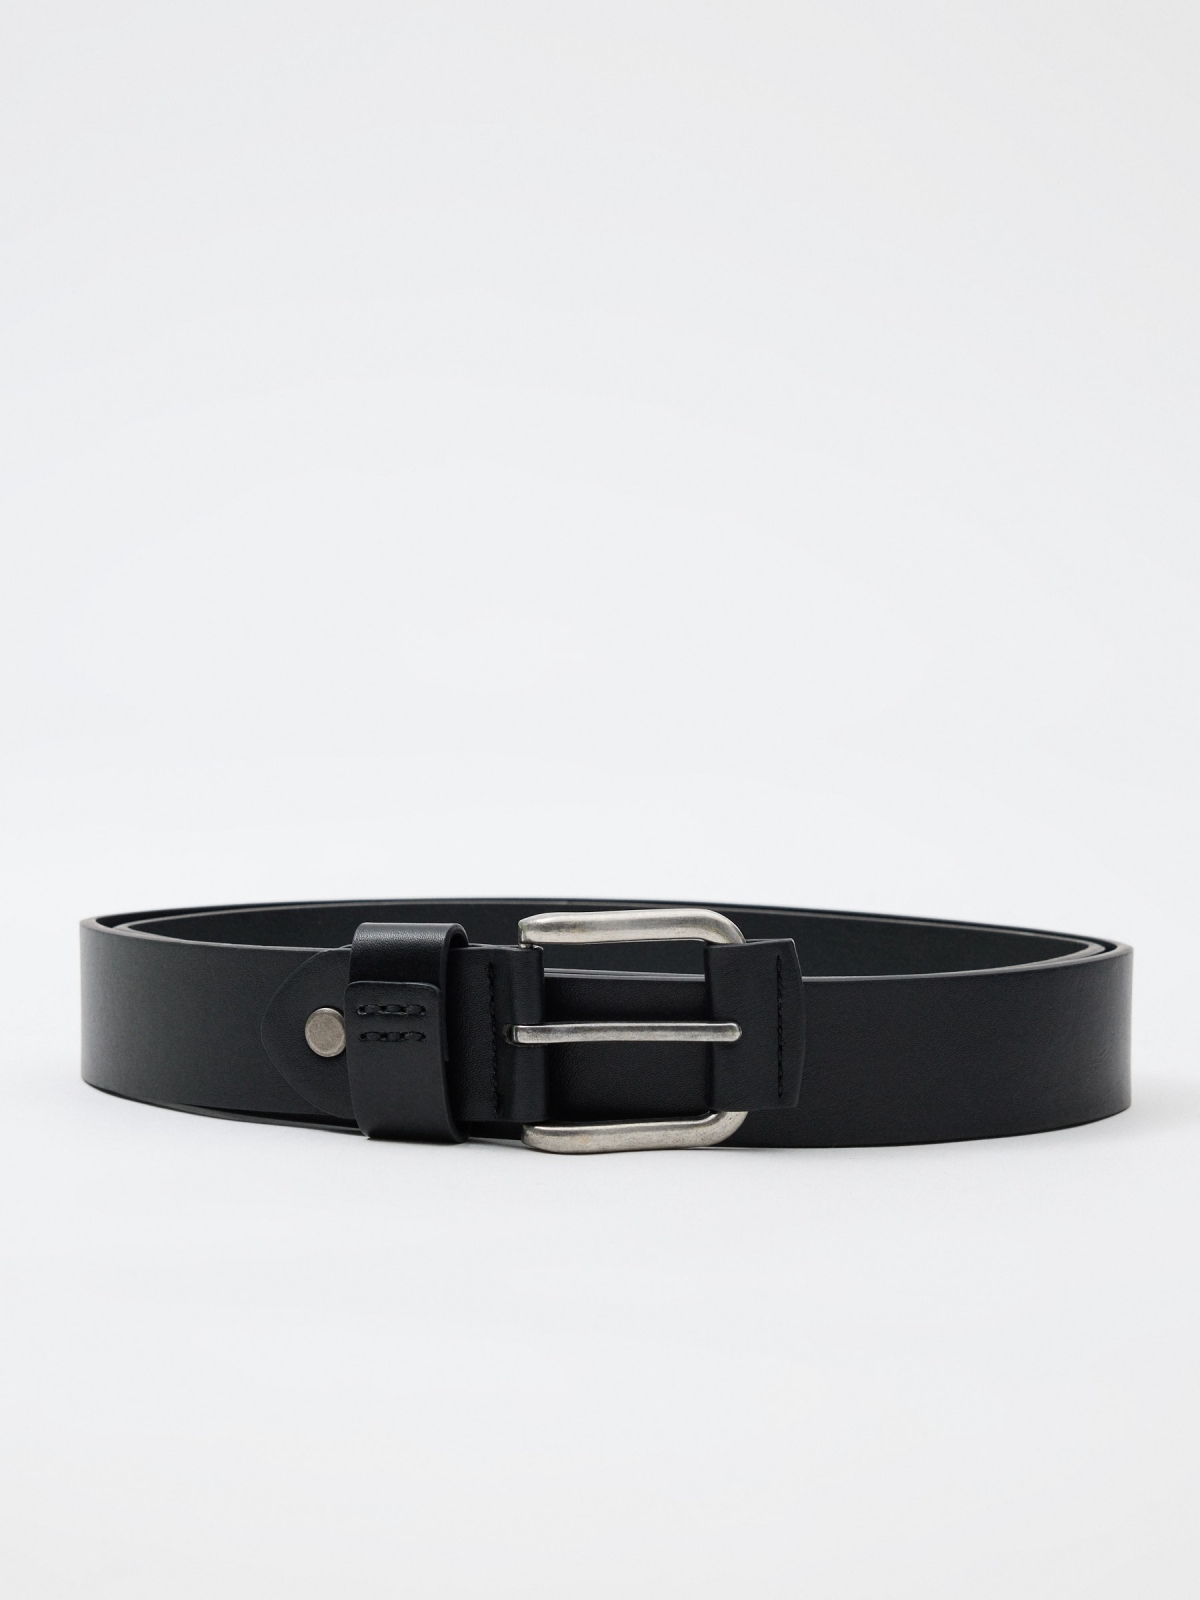 Black leatherette belt for men black